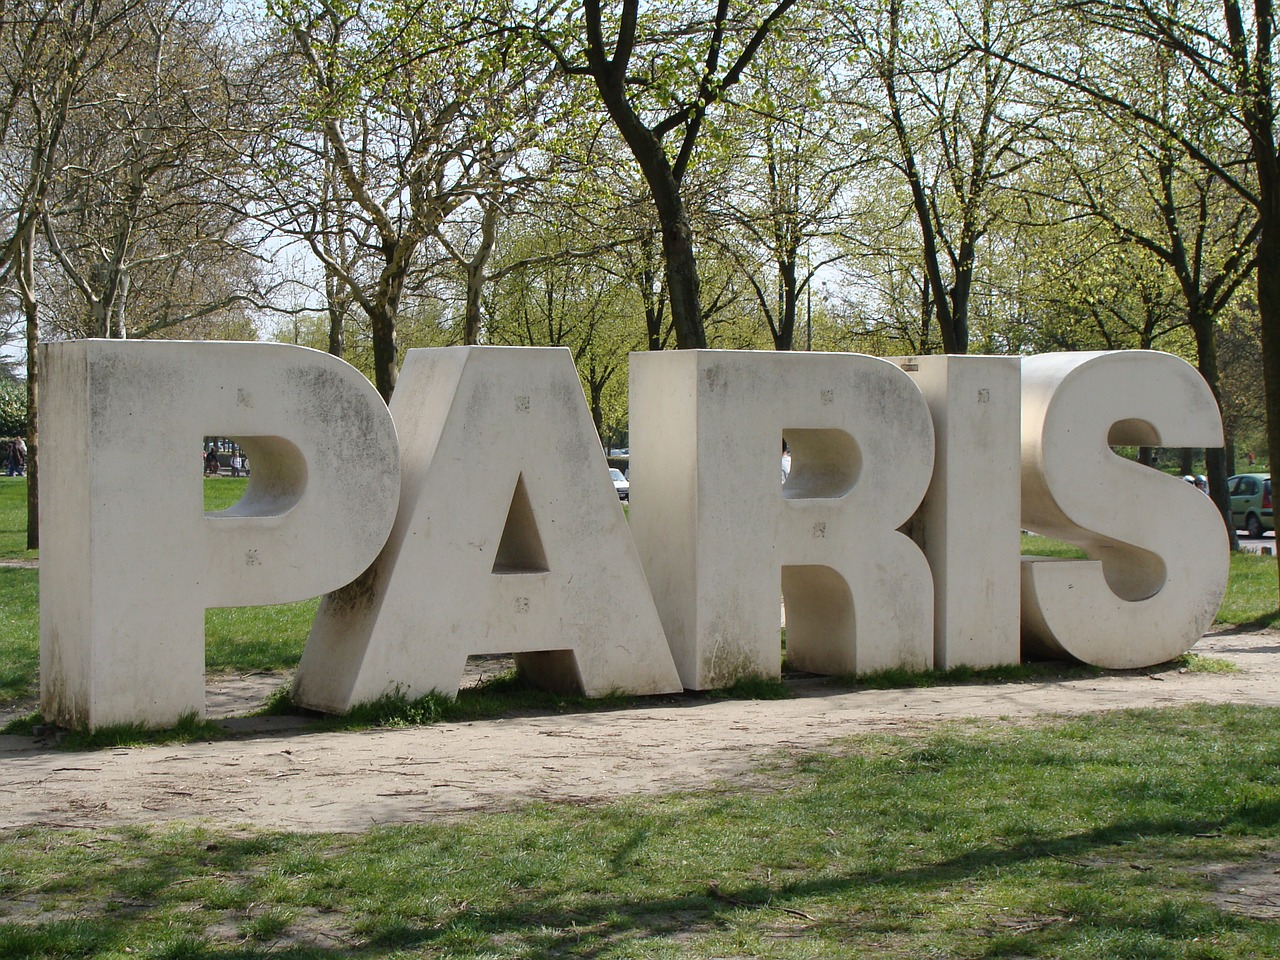 paris france parc floral de paris free photo